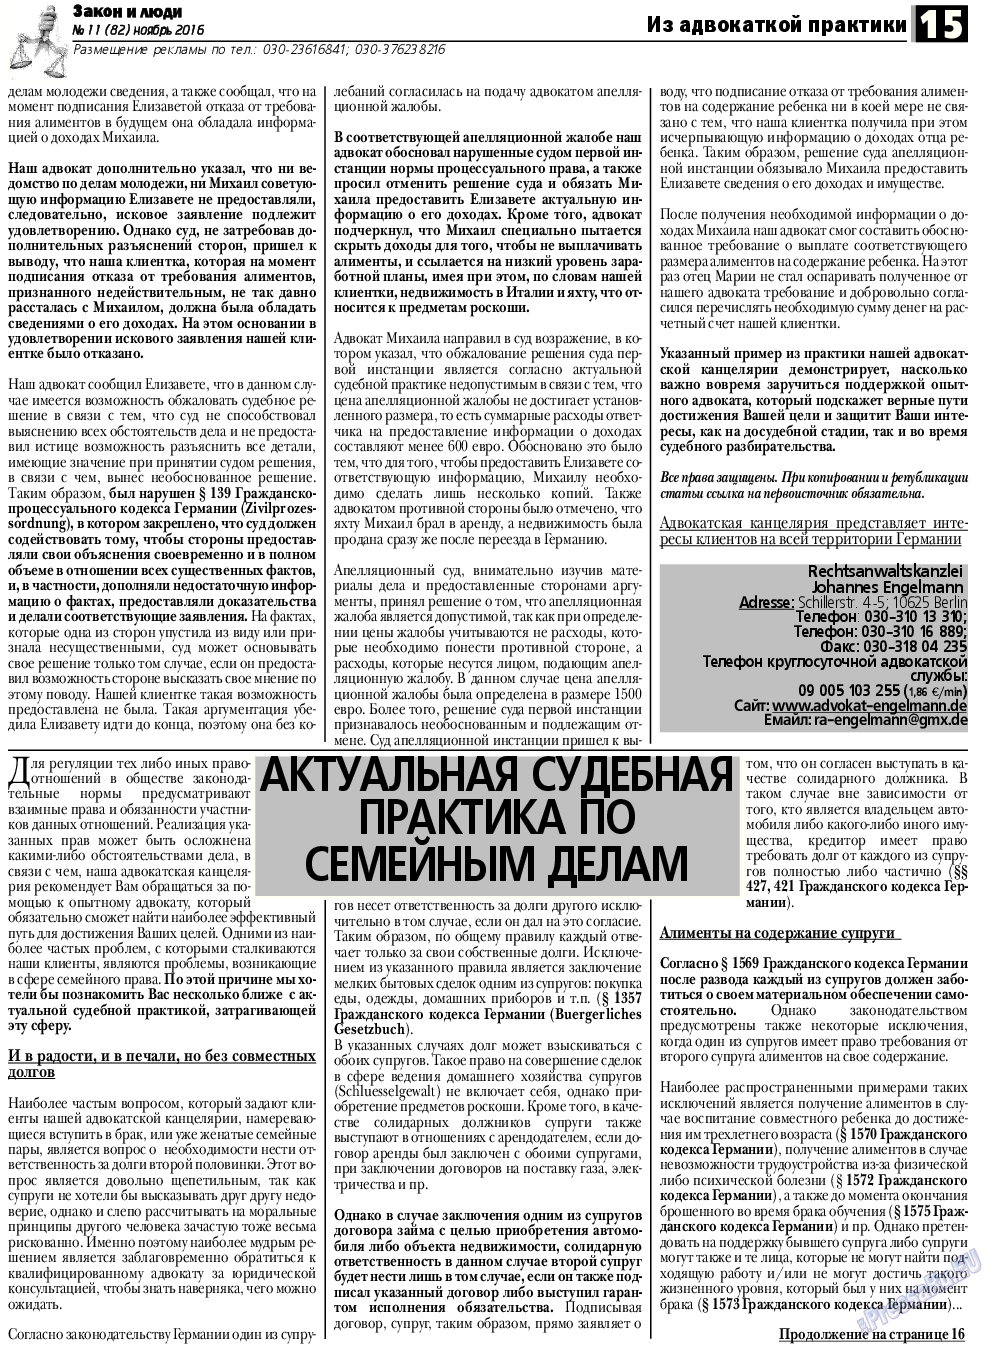 Закон и люди, газета. 2016 №11 стр.15